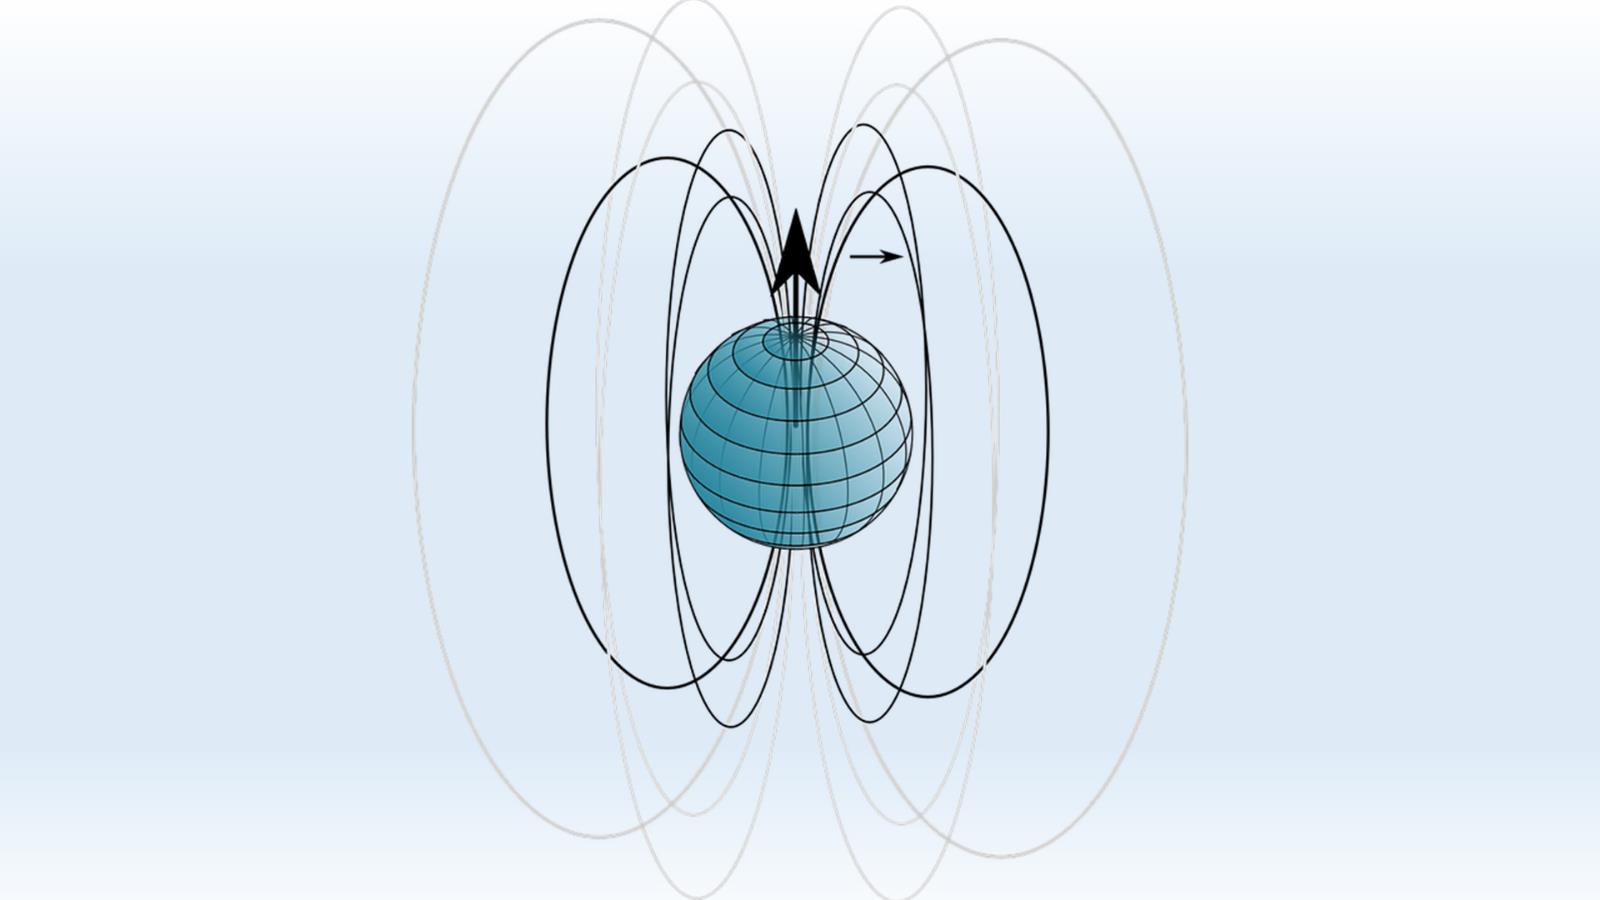 شكل توضيحي لخطوط المجال المغناطيسي للأرض الذي يعد بوصلة الطيور أثناء هجرتها (بيكسابي)